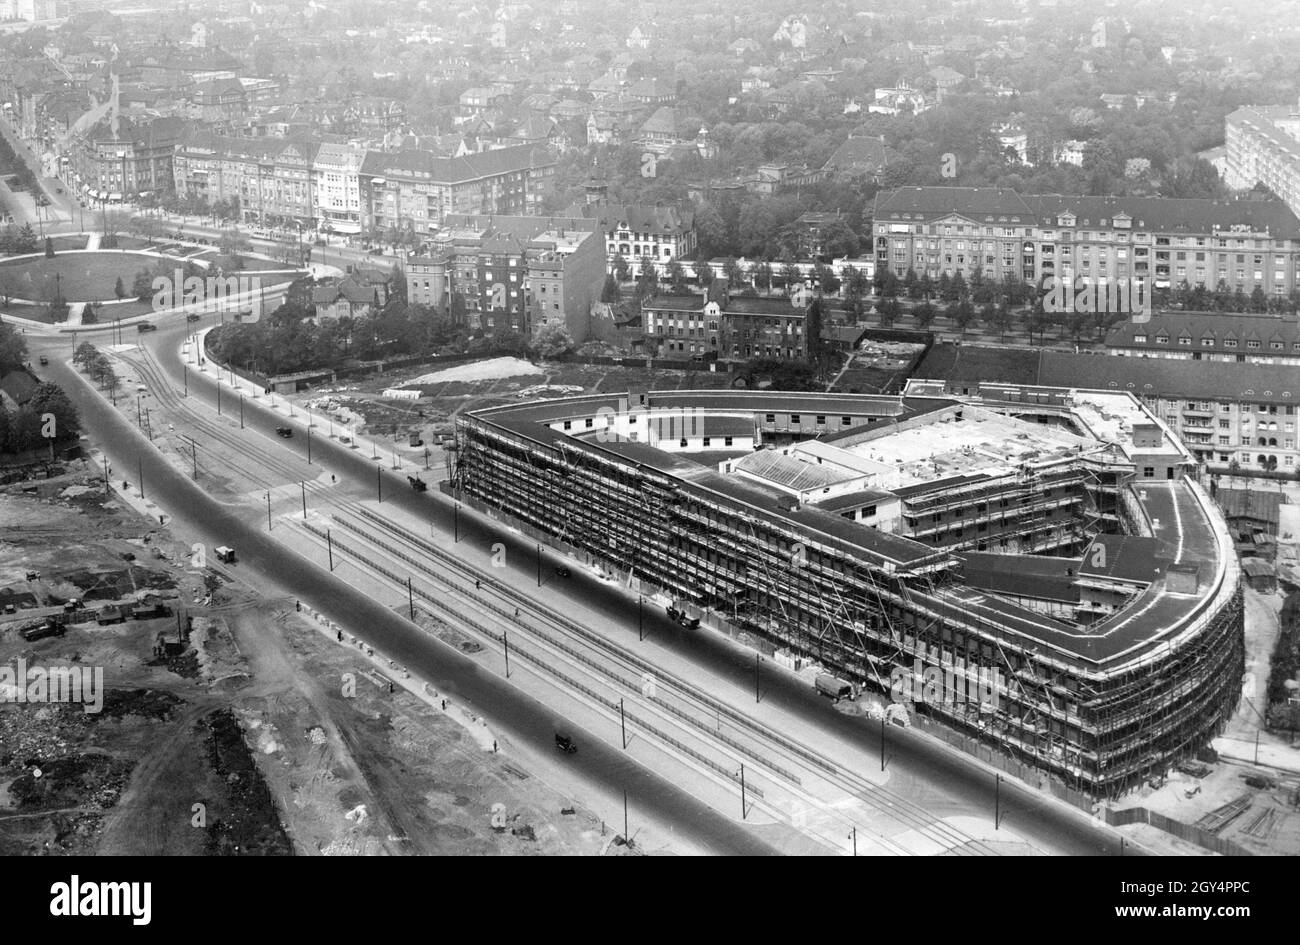 La conchiglia della radio House di Berlino (oggi Haus des Rundfunks) a Berlino-Westend è già in piedi nel 1930. L'edificio è stato aperto nel gennaio 1931. L'area di fronte a Masurenallee, su cui si trova oggi parte della fiera, è ancora fiaccata. La foto è stata scattata dalla torre radiofonica di Berlino e mostra il Westend con la Reichskanzlerplatz (oggi: Theodor-Heuss-Platz) sulla sinistra. [traduzione automatizzata] Foto Stock